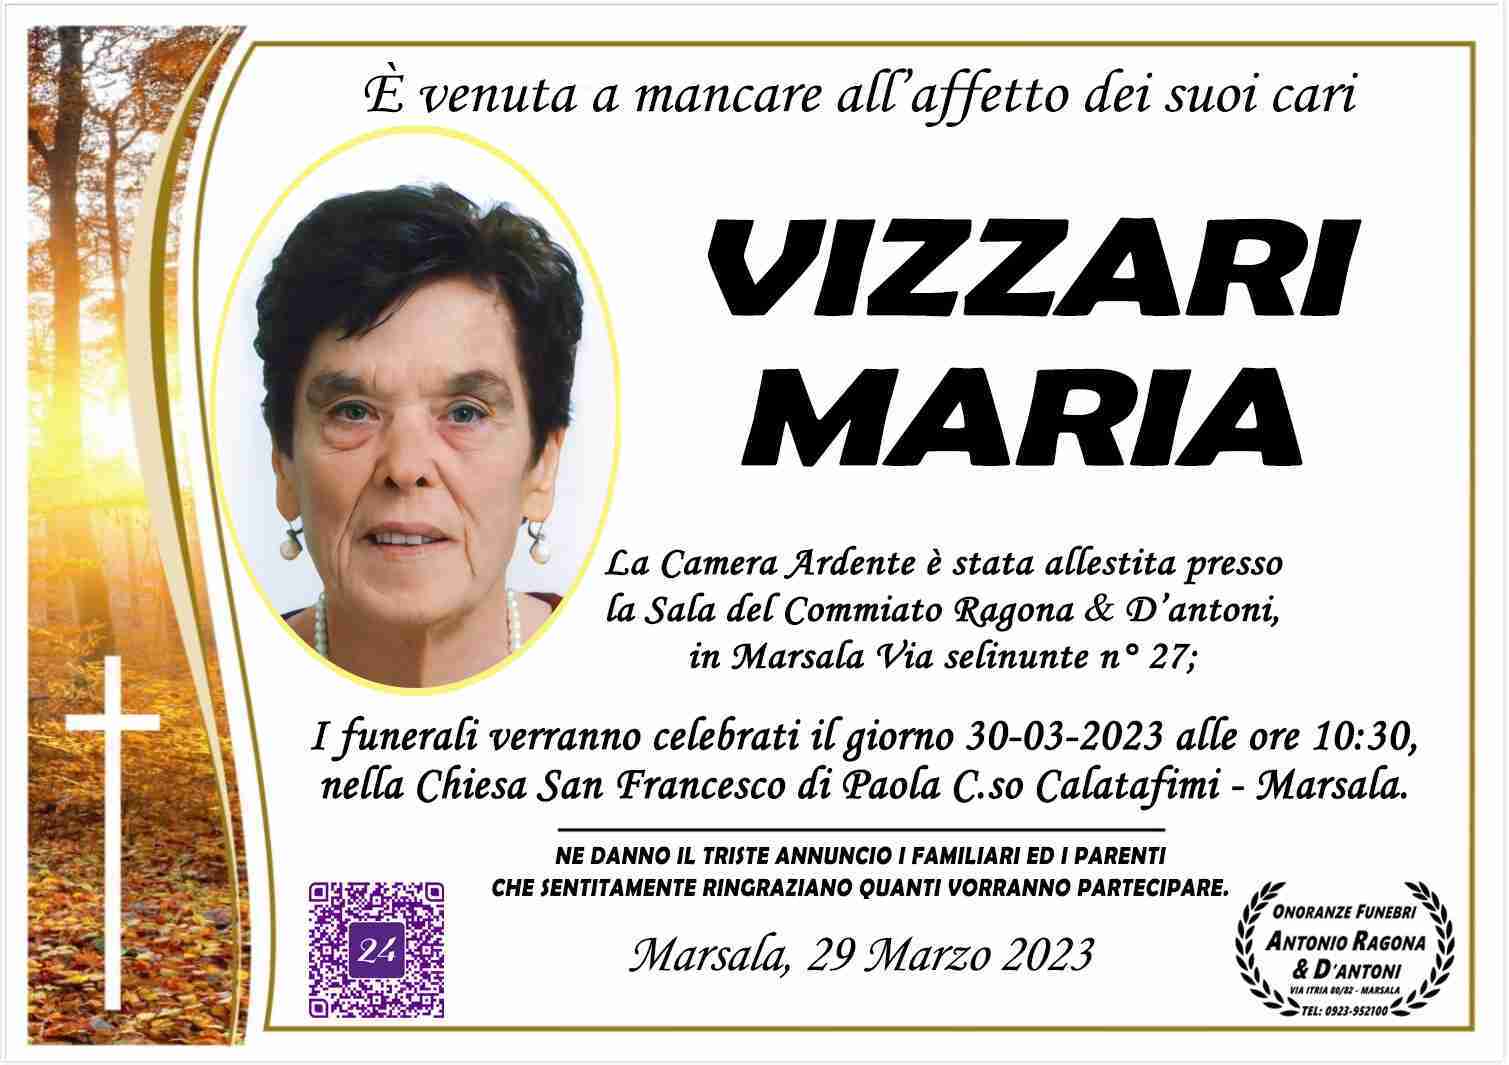 Maria Vizzari